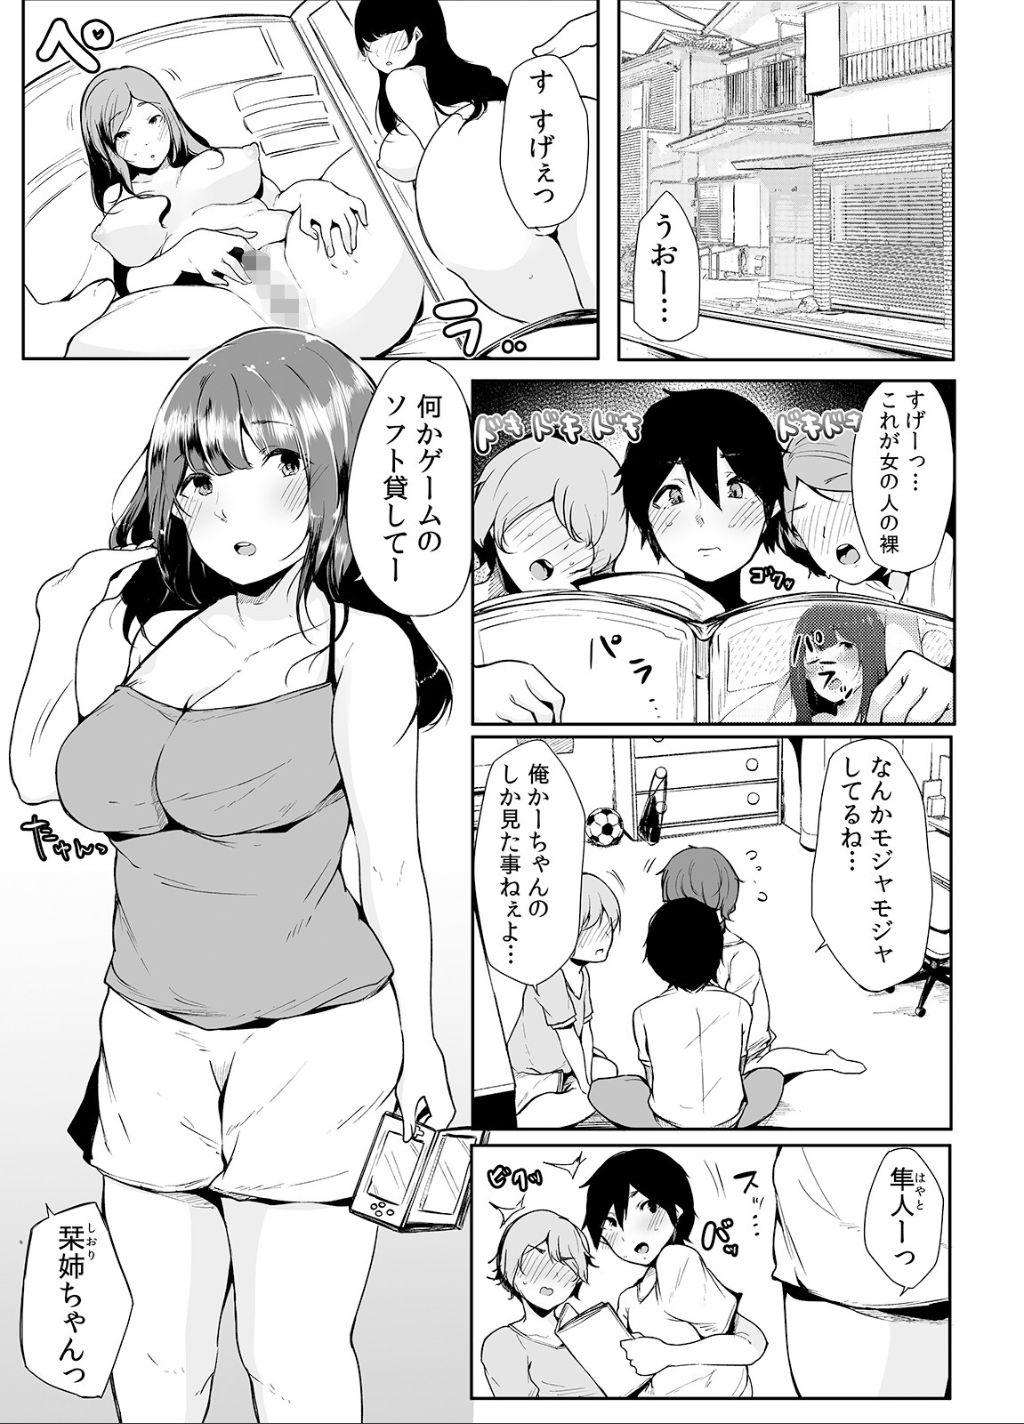 Hardsex Otouto ni Ero Manga to Onaji Koto o Sare Chau o Nee-chan no Hanashi 1 - Original Gozo - Page 4